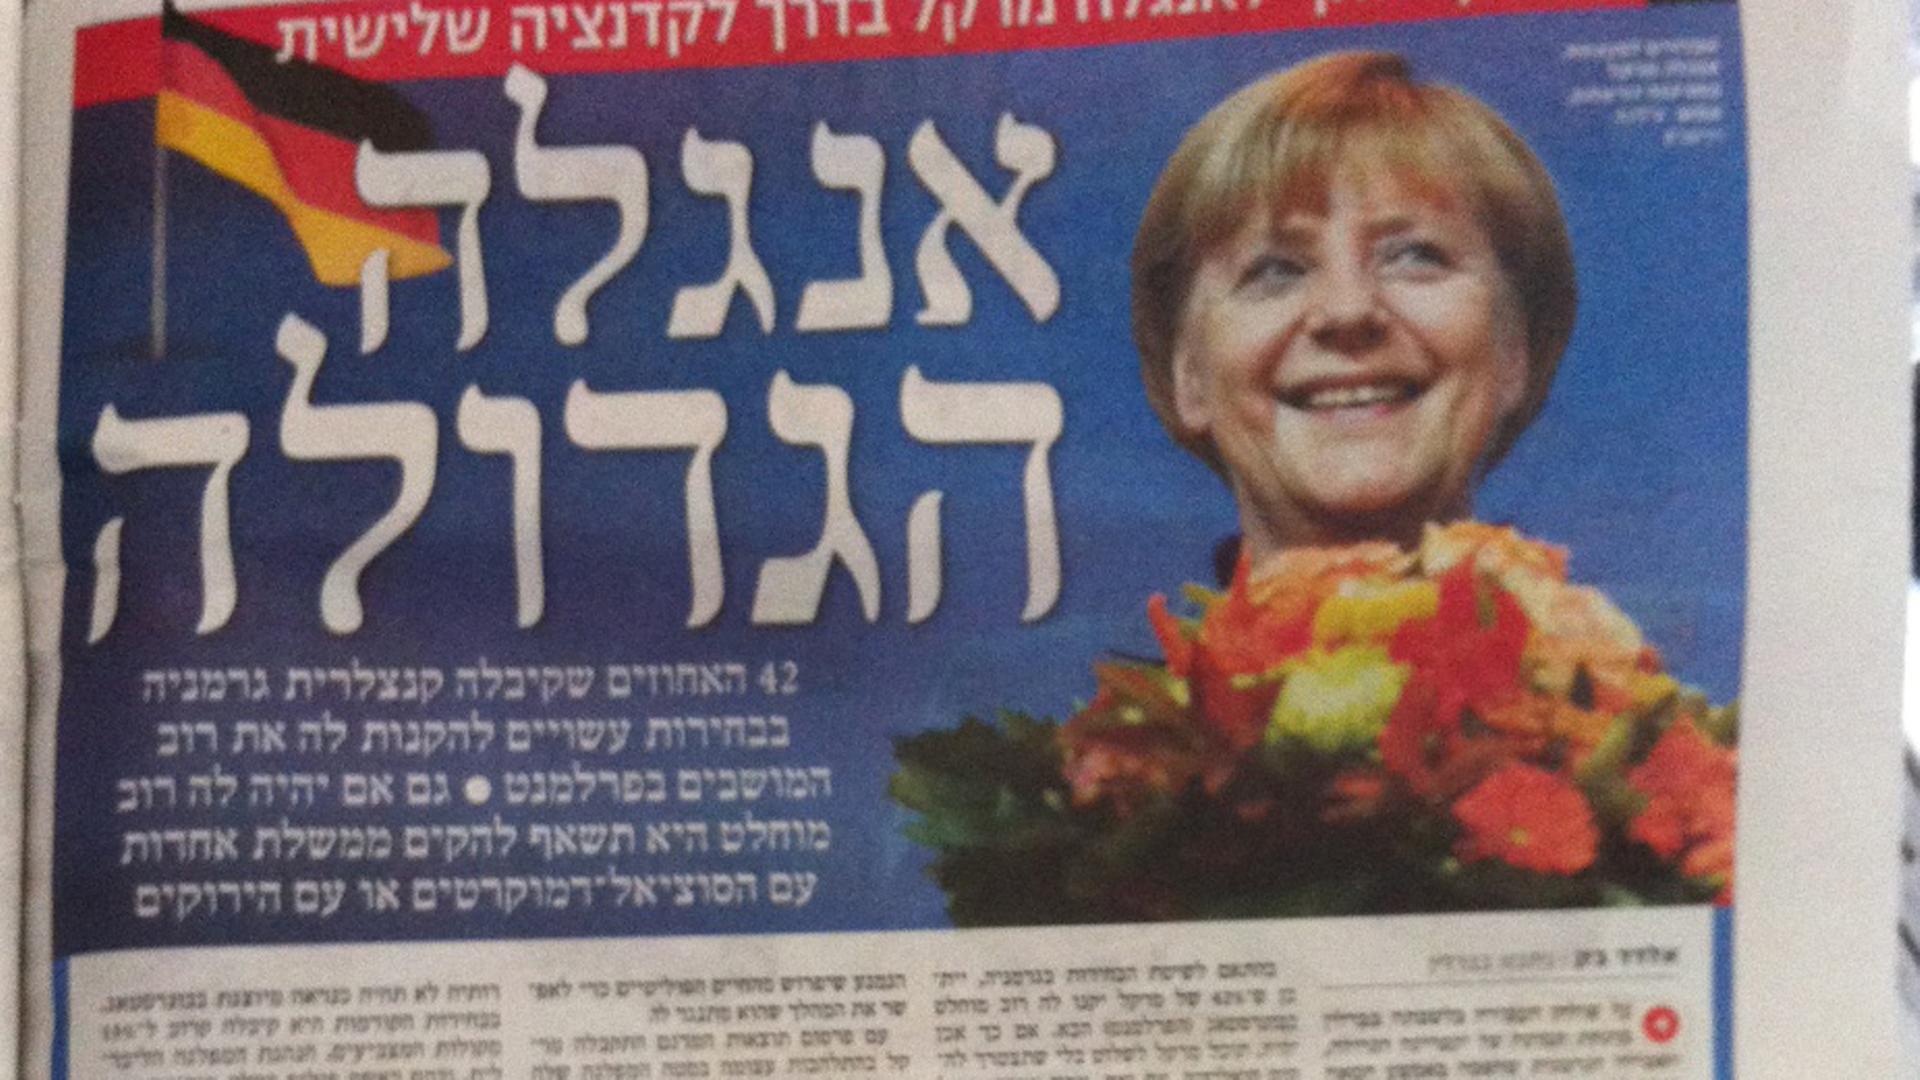 Eine Reaktionen auf die letzte Bundestagswahl in Deutschland September 2013 in der israelischen Zeitung Jedi ot Acharonot.